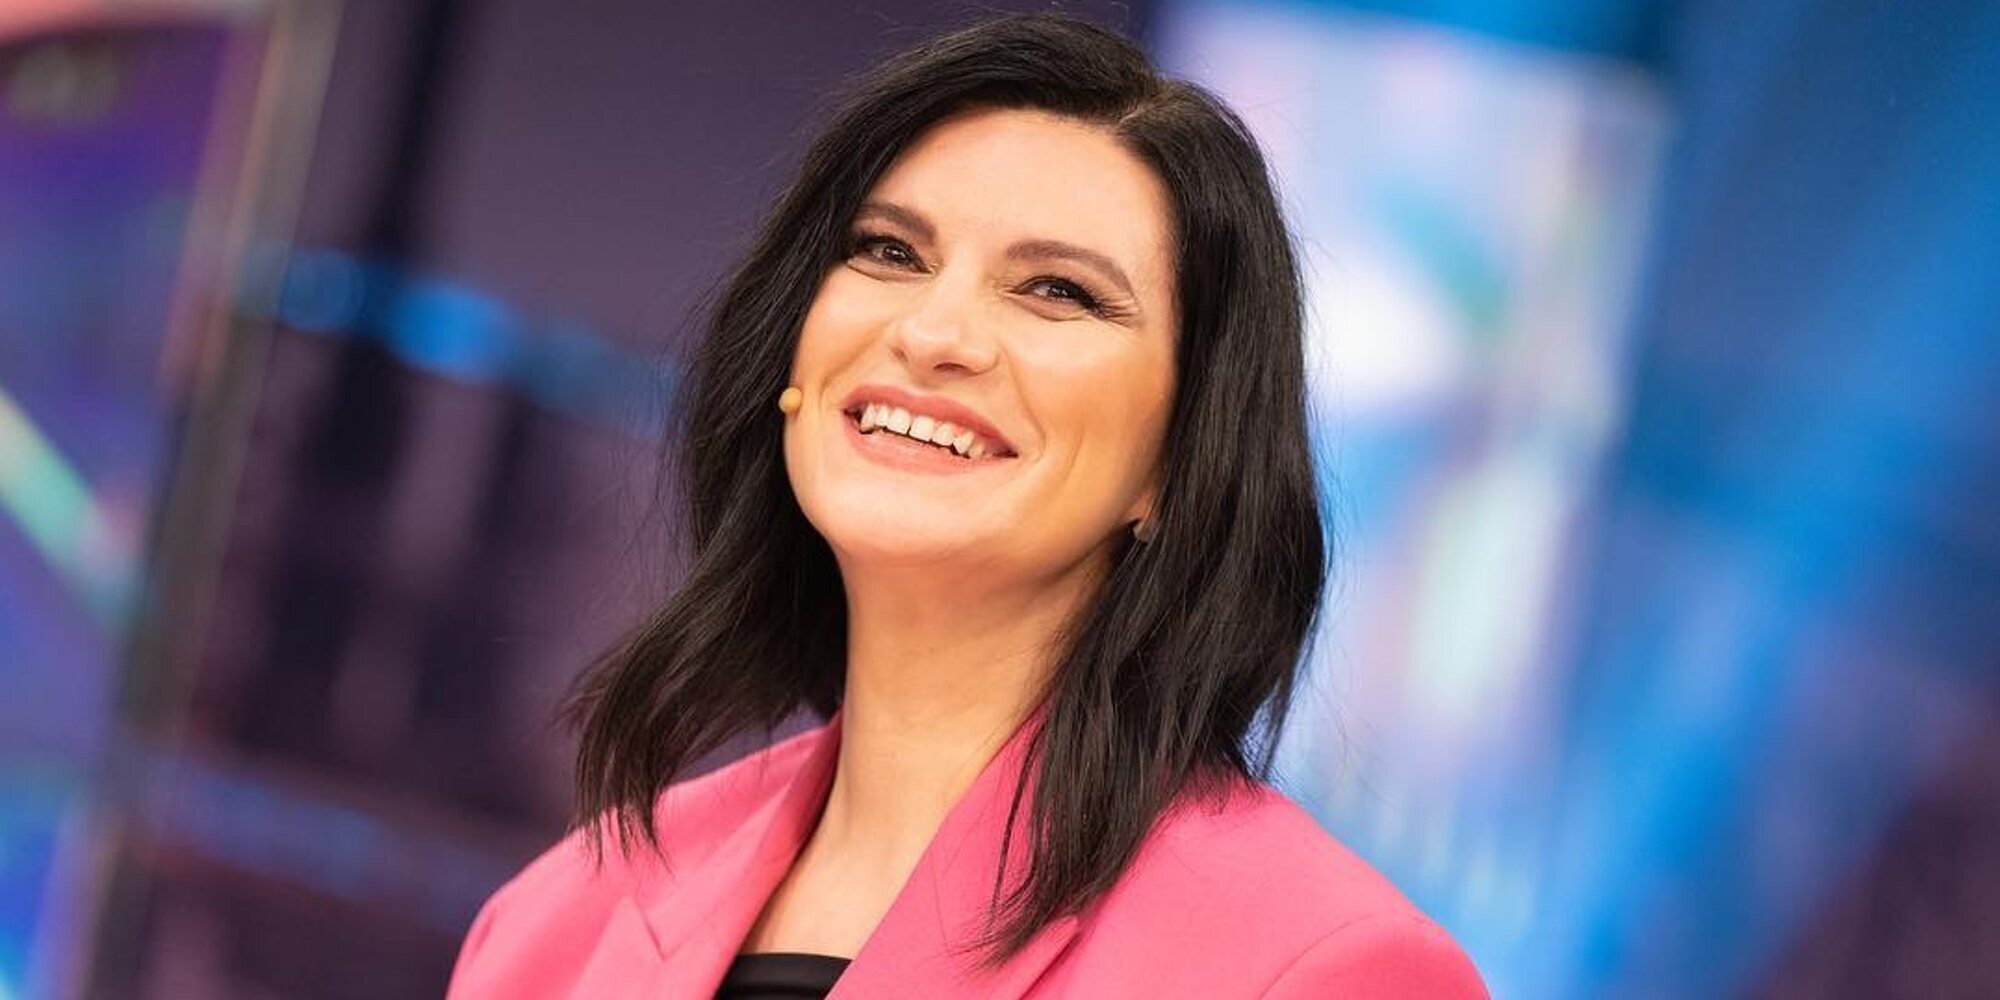 La razón por la que Laura Pausini ha terminado llorando en 'El Hormiguero'